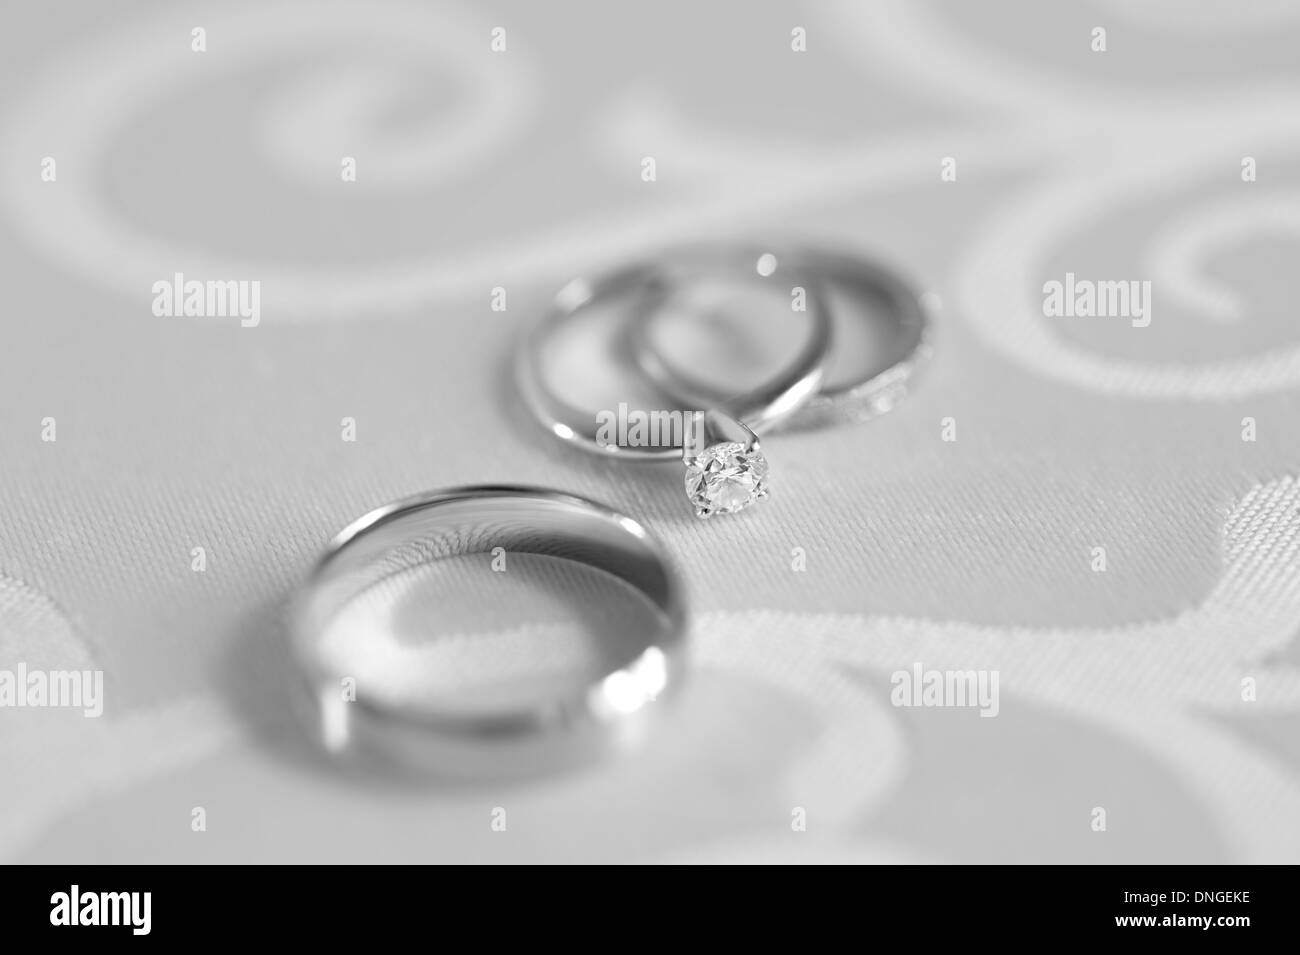 Tre anelli di aggancio con il diamante e due anelli di nozze su un tavolo. Fotografia in bianco e nero. Foto Stock